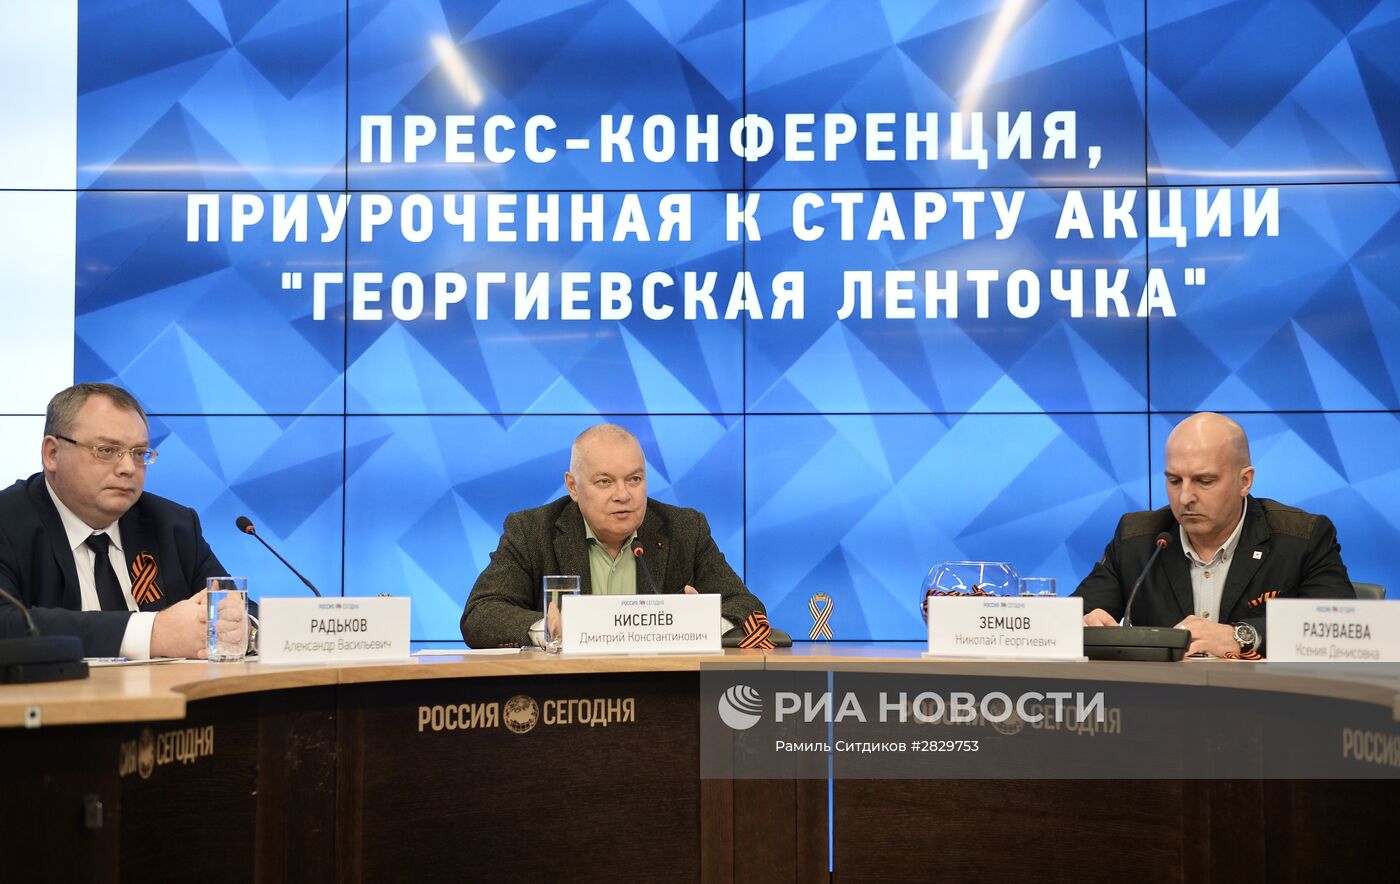 Пресс-конференция, приуроченная к старту акции "Георгиевская ленточка"